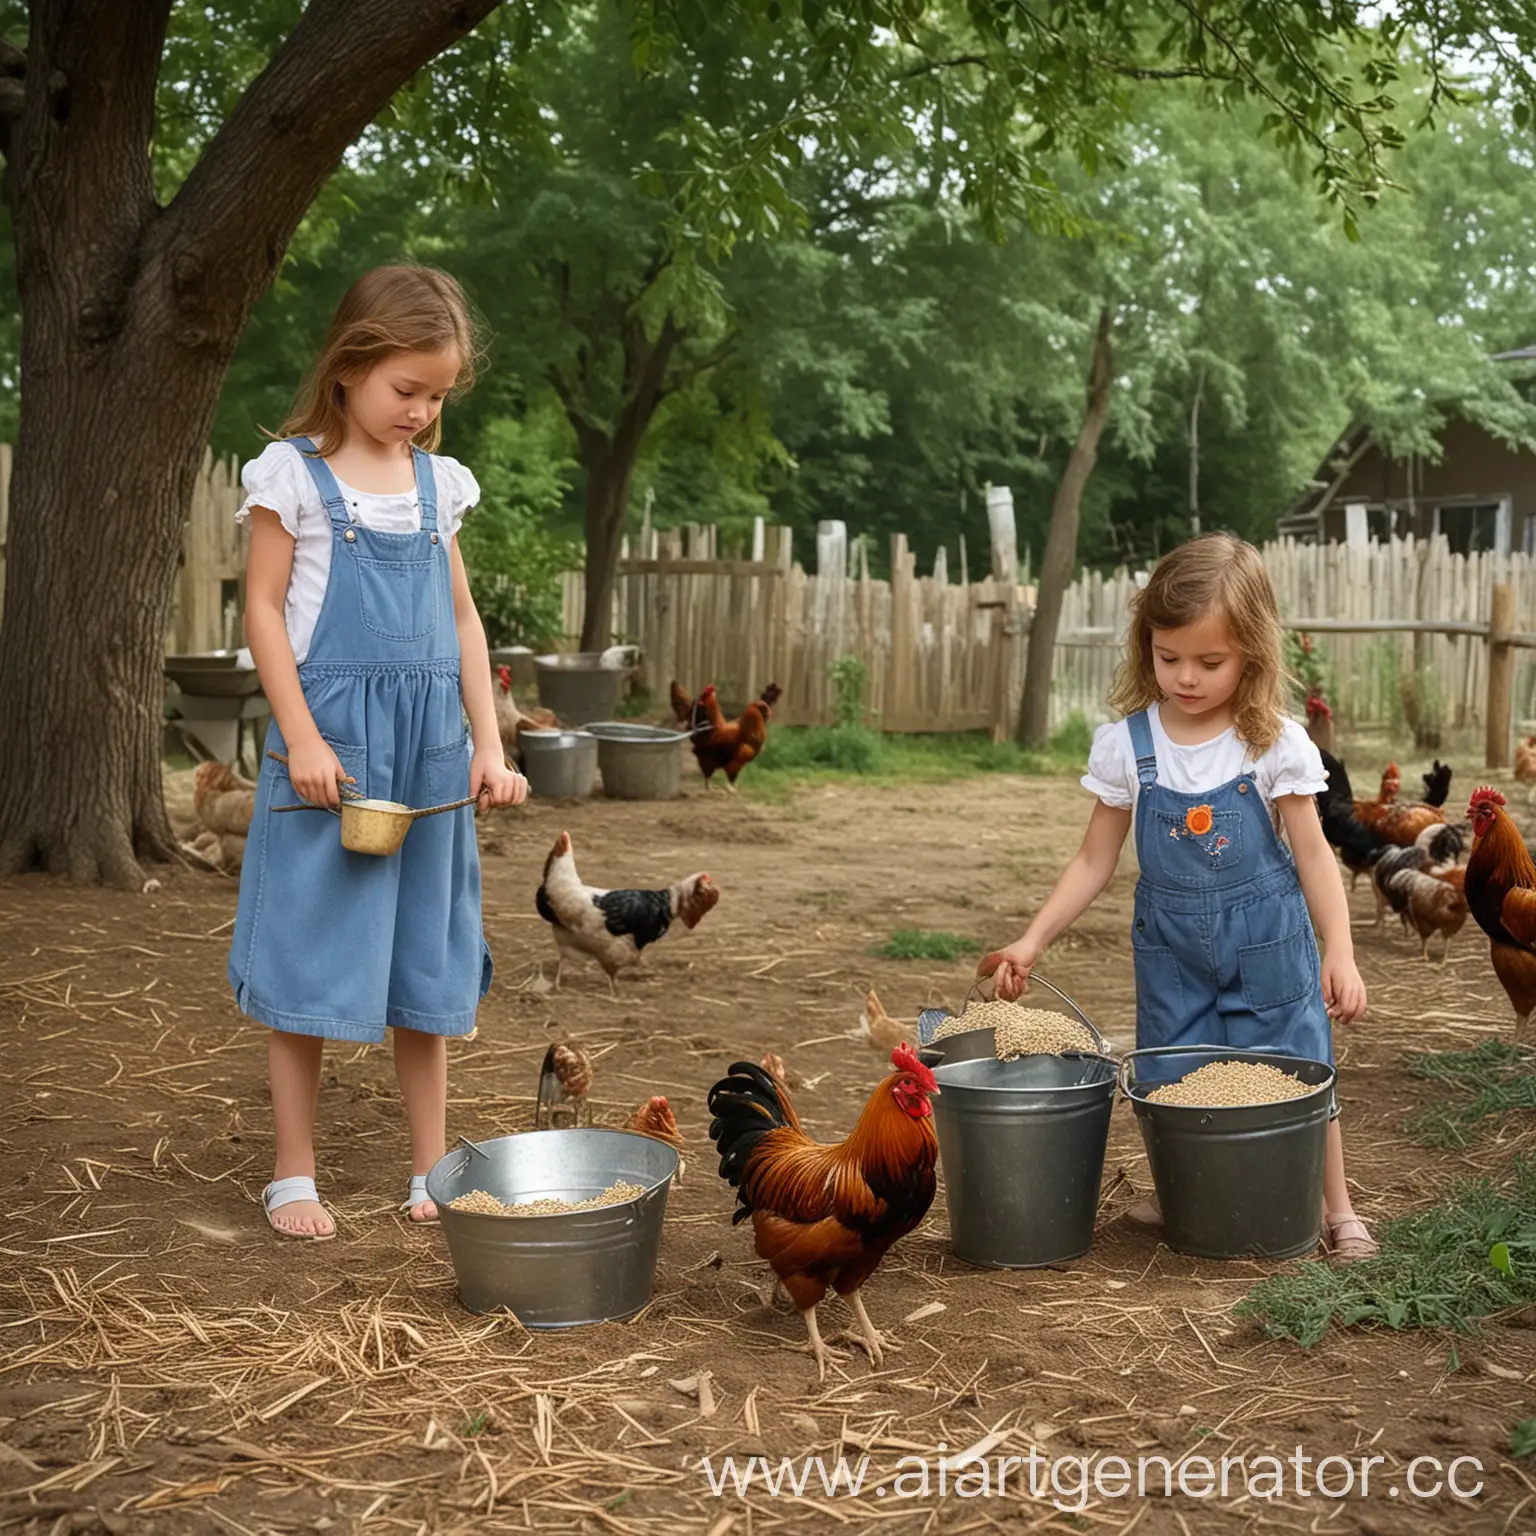 деревенский птичий двор лето во дворе 5 куриц и петух клюют зерно, две девочки 6 лет кормят их зерном в руках одной из них бидон с кормом, вдали стоят несколько деревьев  